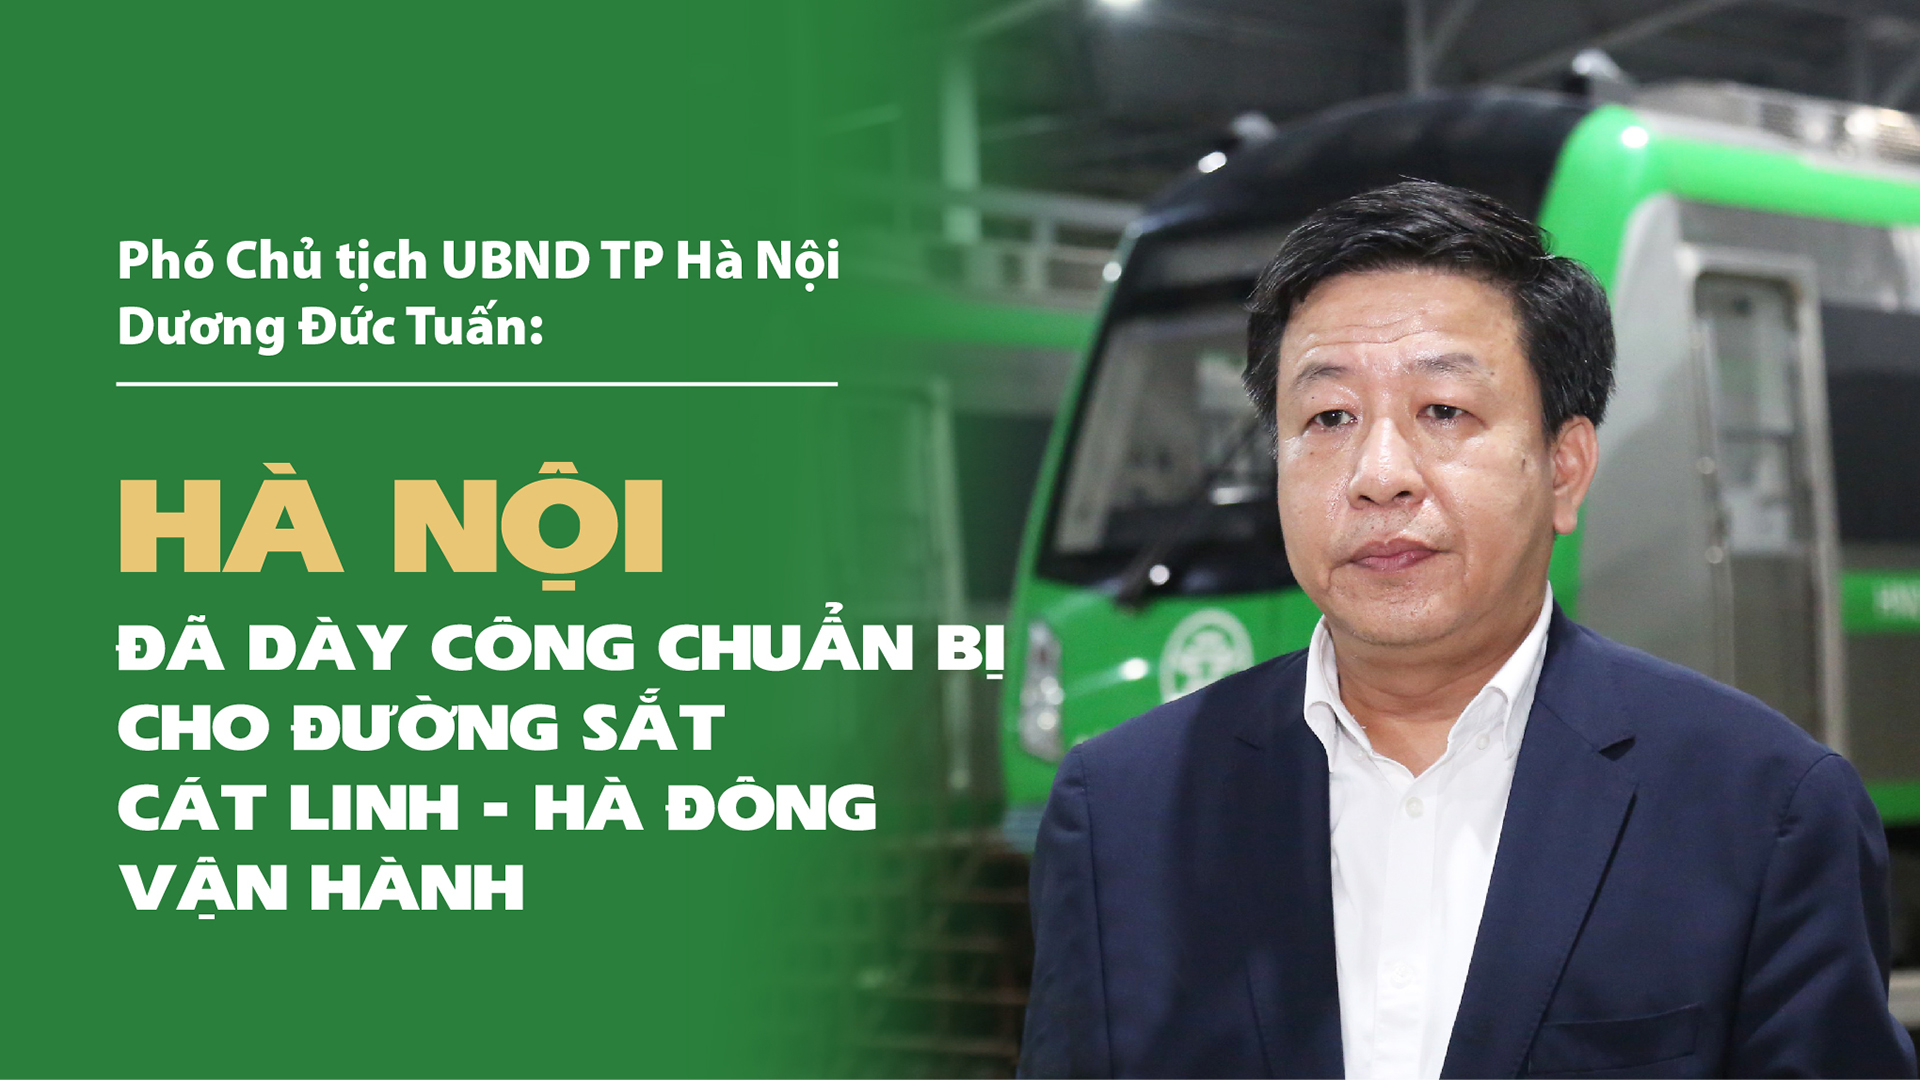 Hà Nội đã chuẩn bị cho đường sắt Cát Linh - Hà Đông vận hành - Ảnh 1